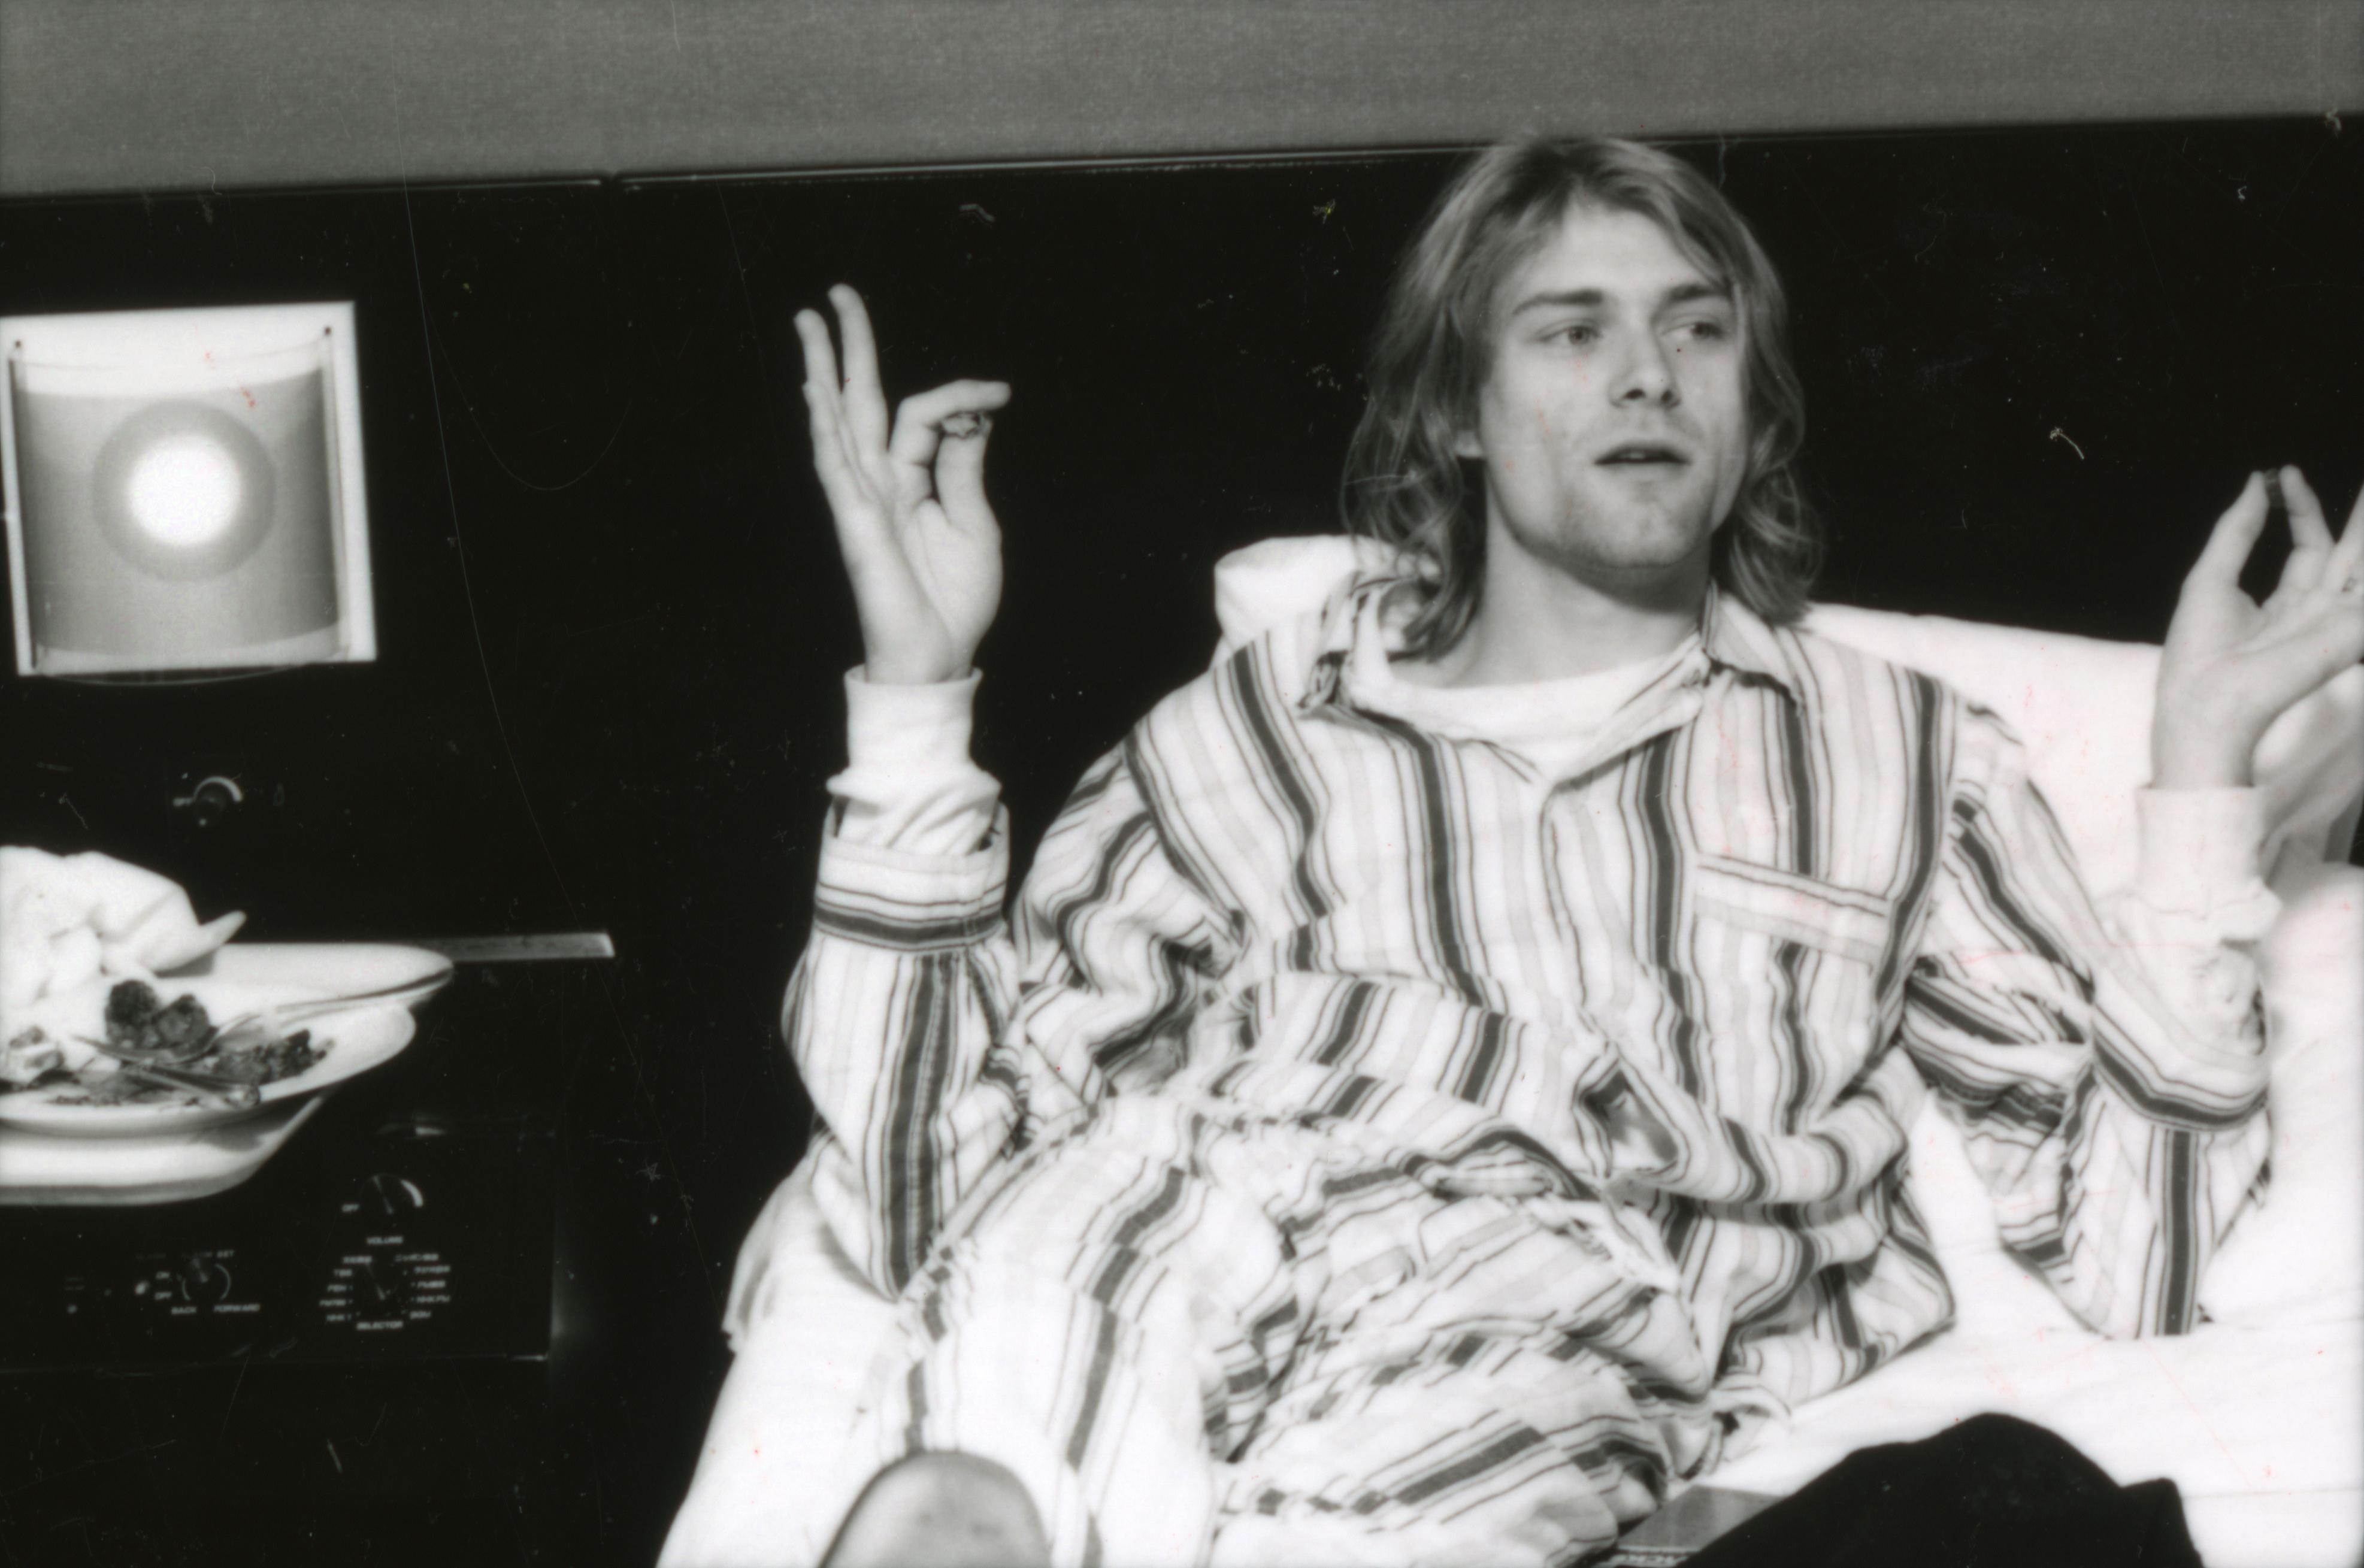 En sus últimas semanas de vida, Cobain intentó quitarse la vida dos veces. Fue internado y se escapó del lugar. Ya no se supo más de él.  (Photo by Gutchie Kojima/Shinko Music/Getty Images)